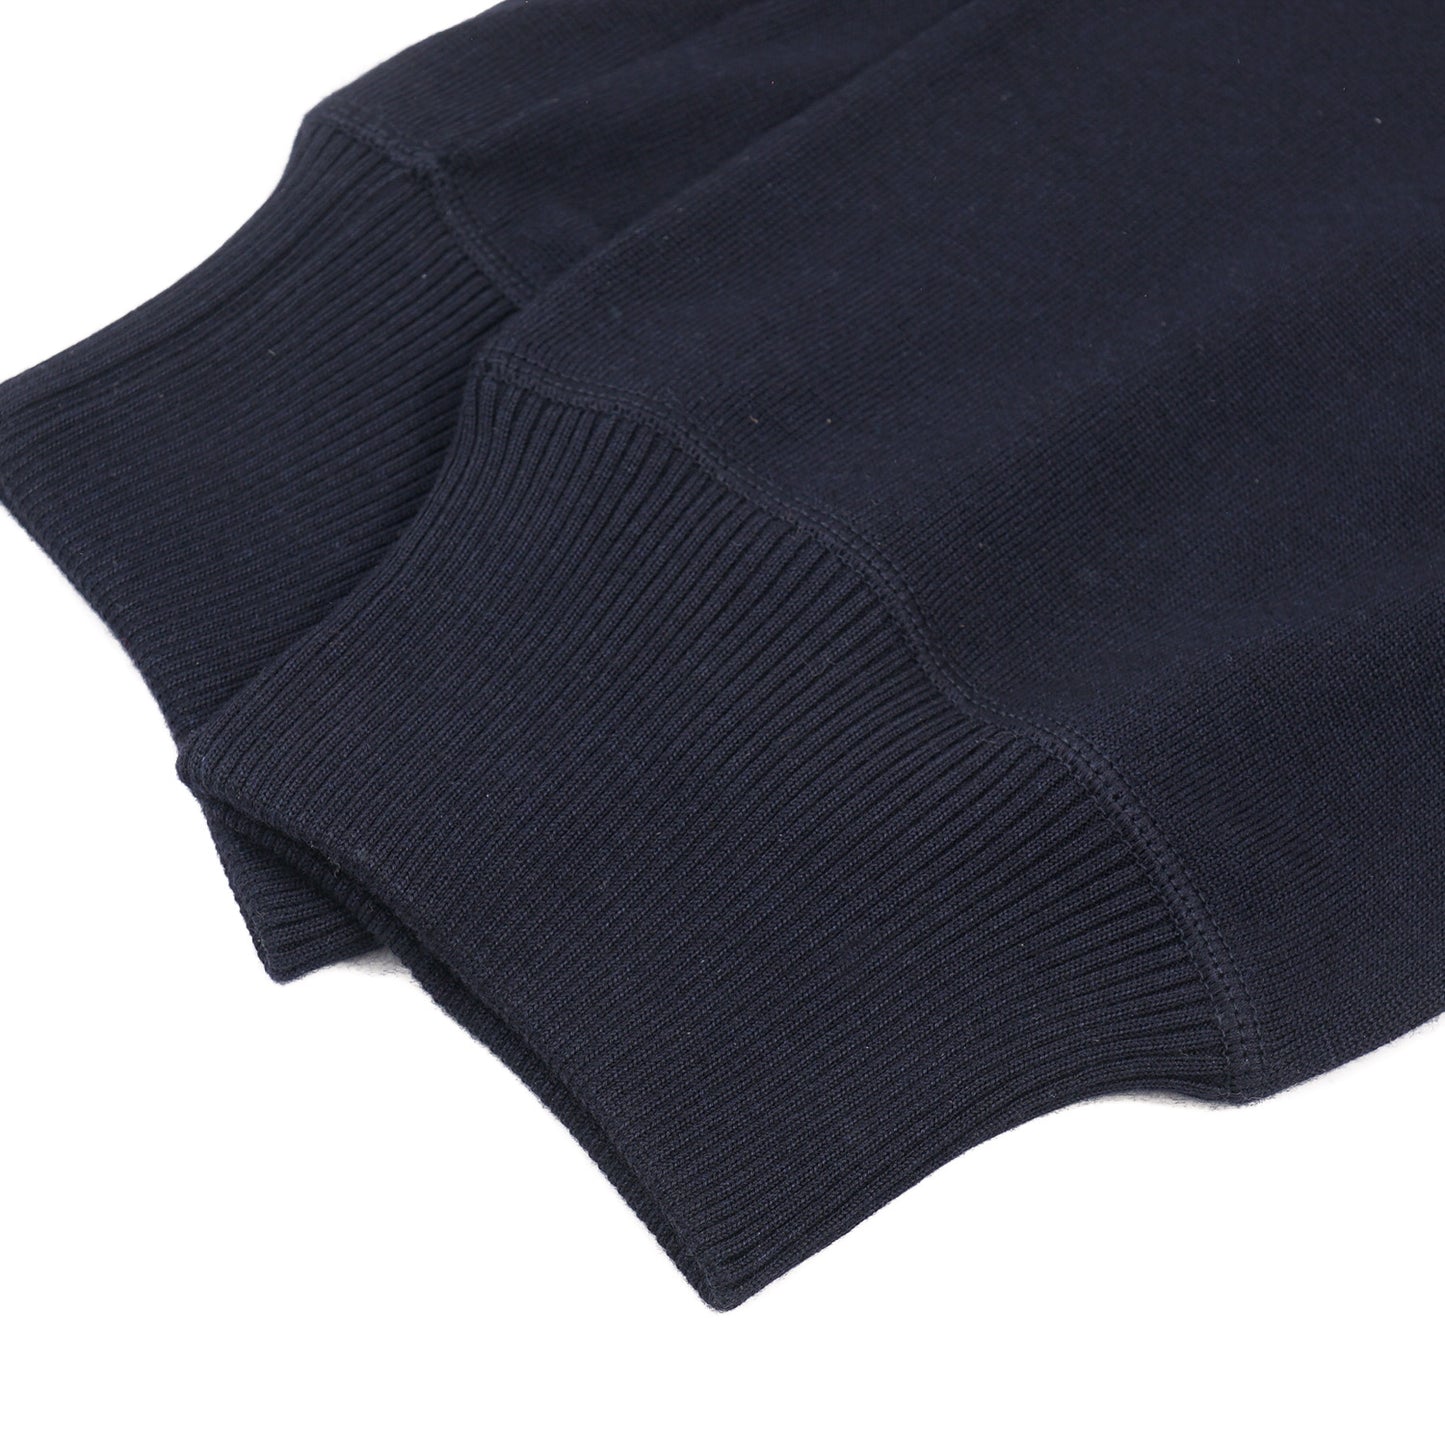 Kiton Knit Cashmere Jogger Pants - Top Shelf Apparel